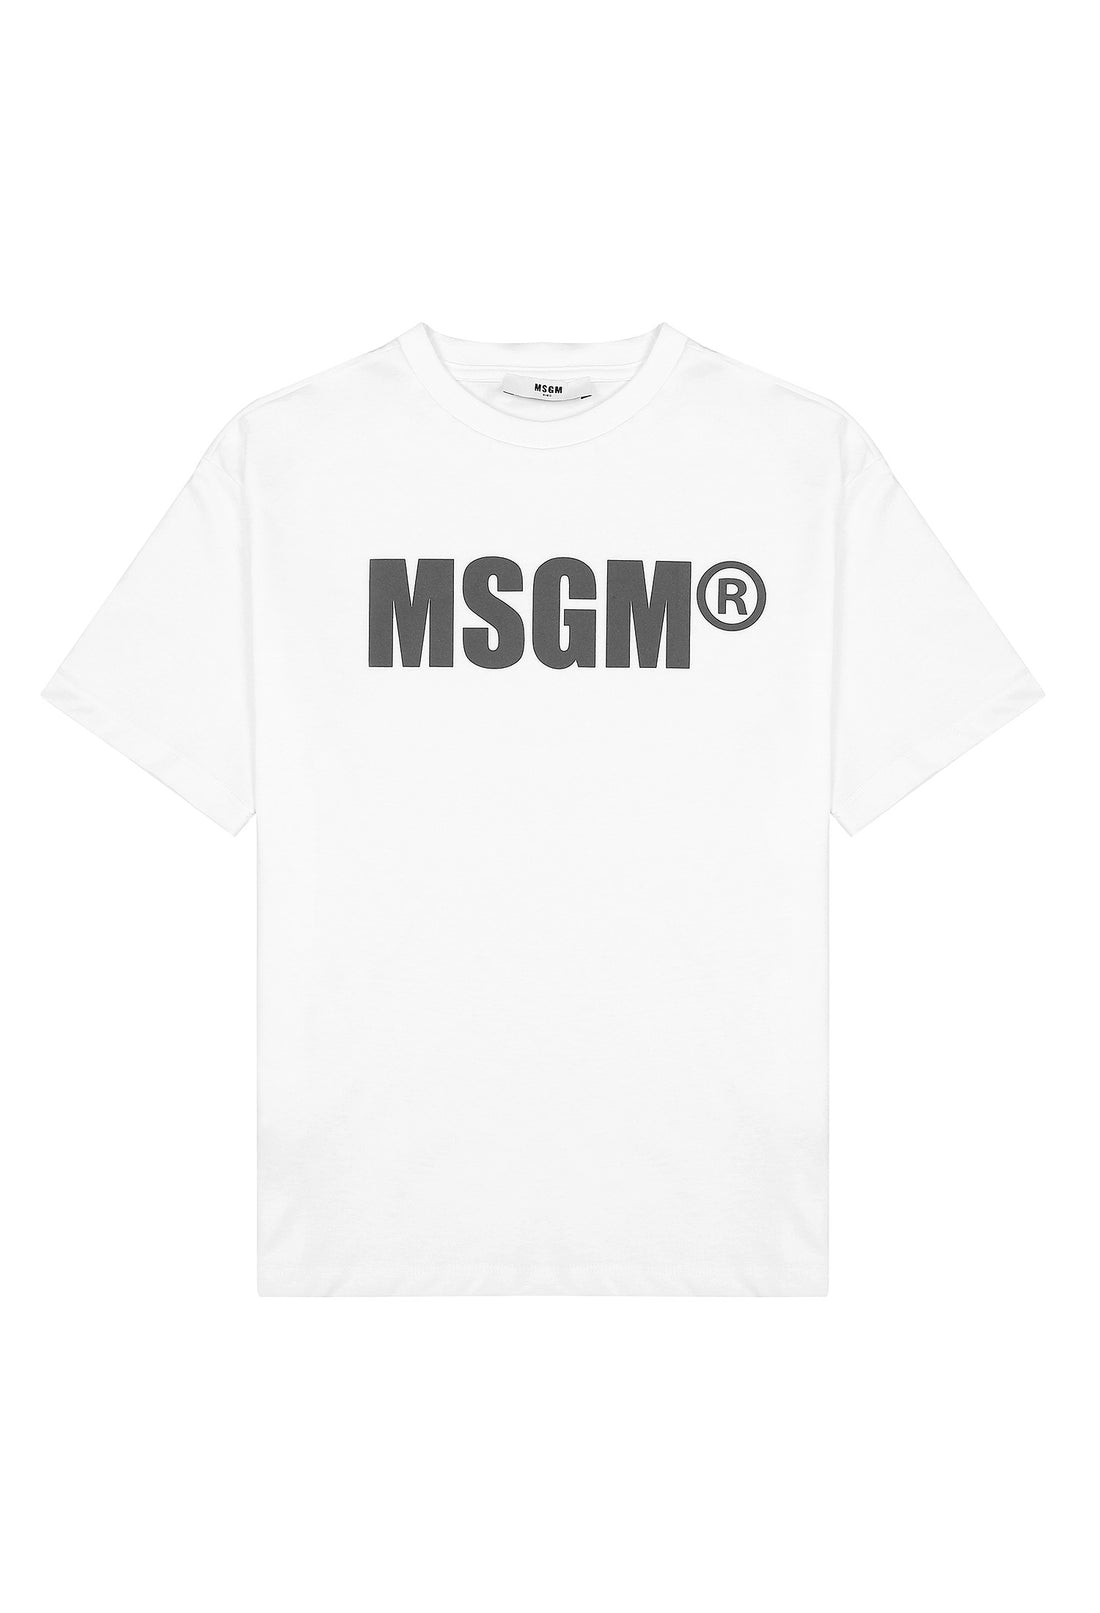 T-shirt materiał biały łączony MSGM 123 9521 123/91c